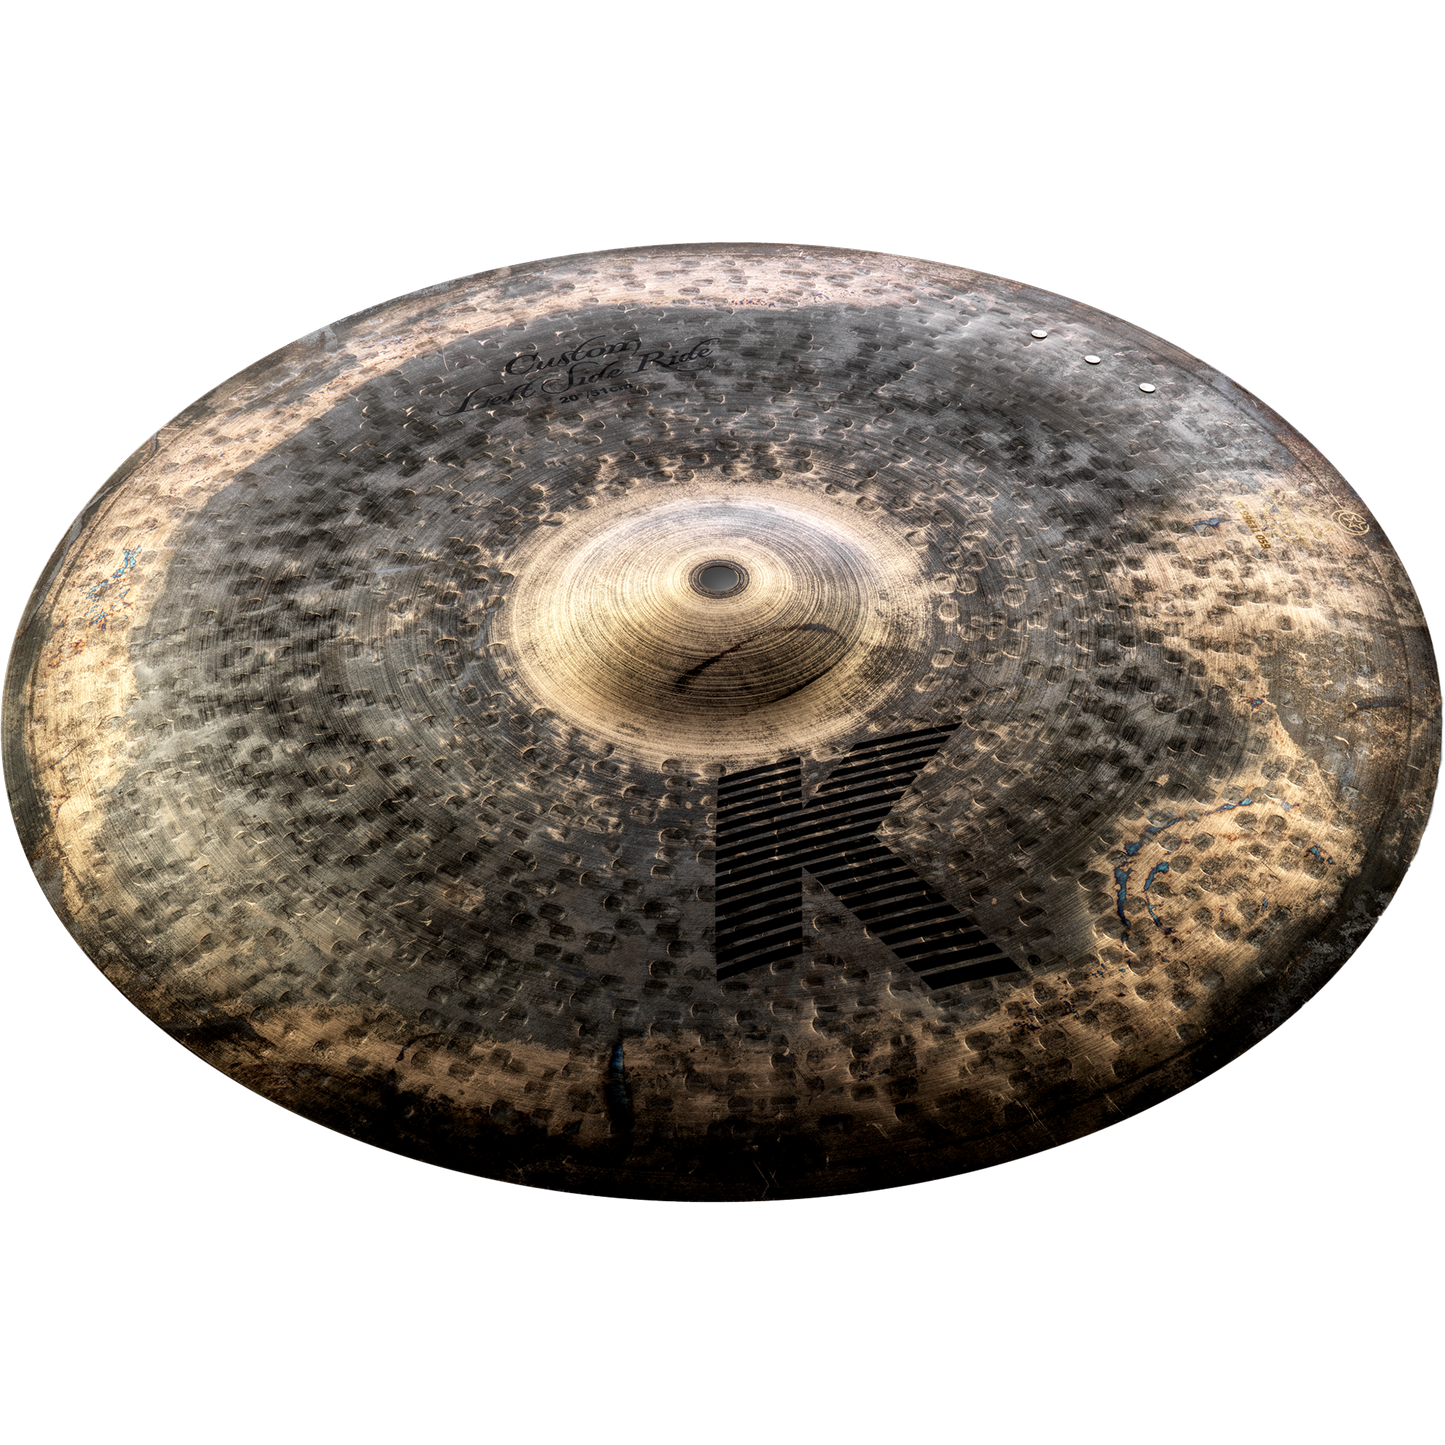 Zildjian 20” K Custom Left Side Ride Cymbal with 3 Rivets